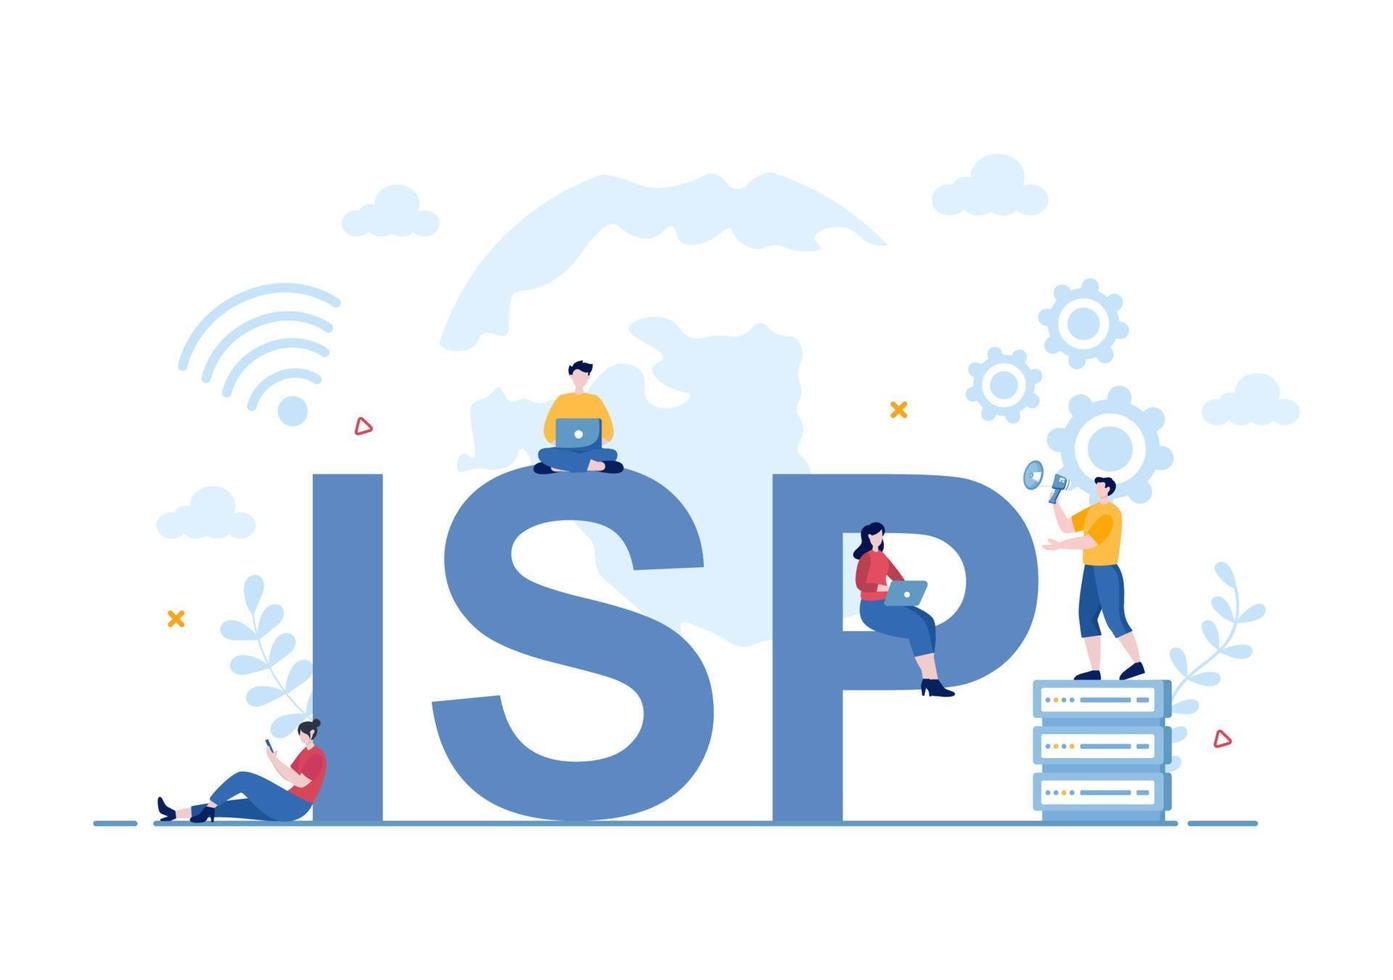 fai ou illustration de dessin animé de fournisseur de services internet avec des mots clés et des icônes pour l'accès à l'intranet, la connexion réseau sécurisée et la protection de la vie privée vecteur